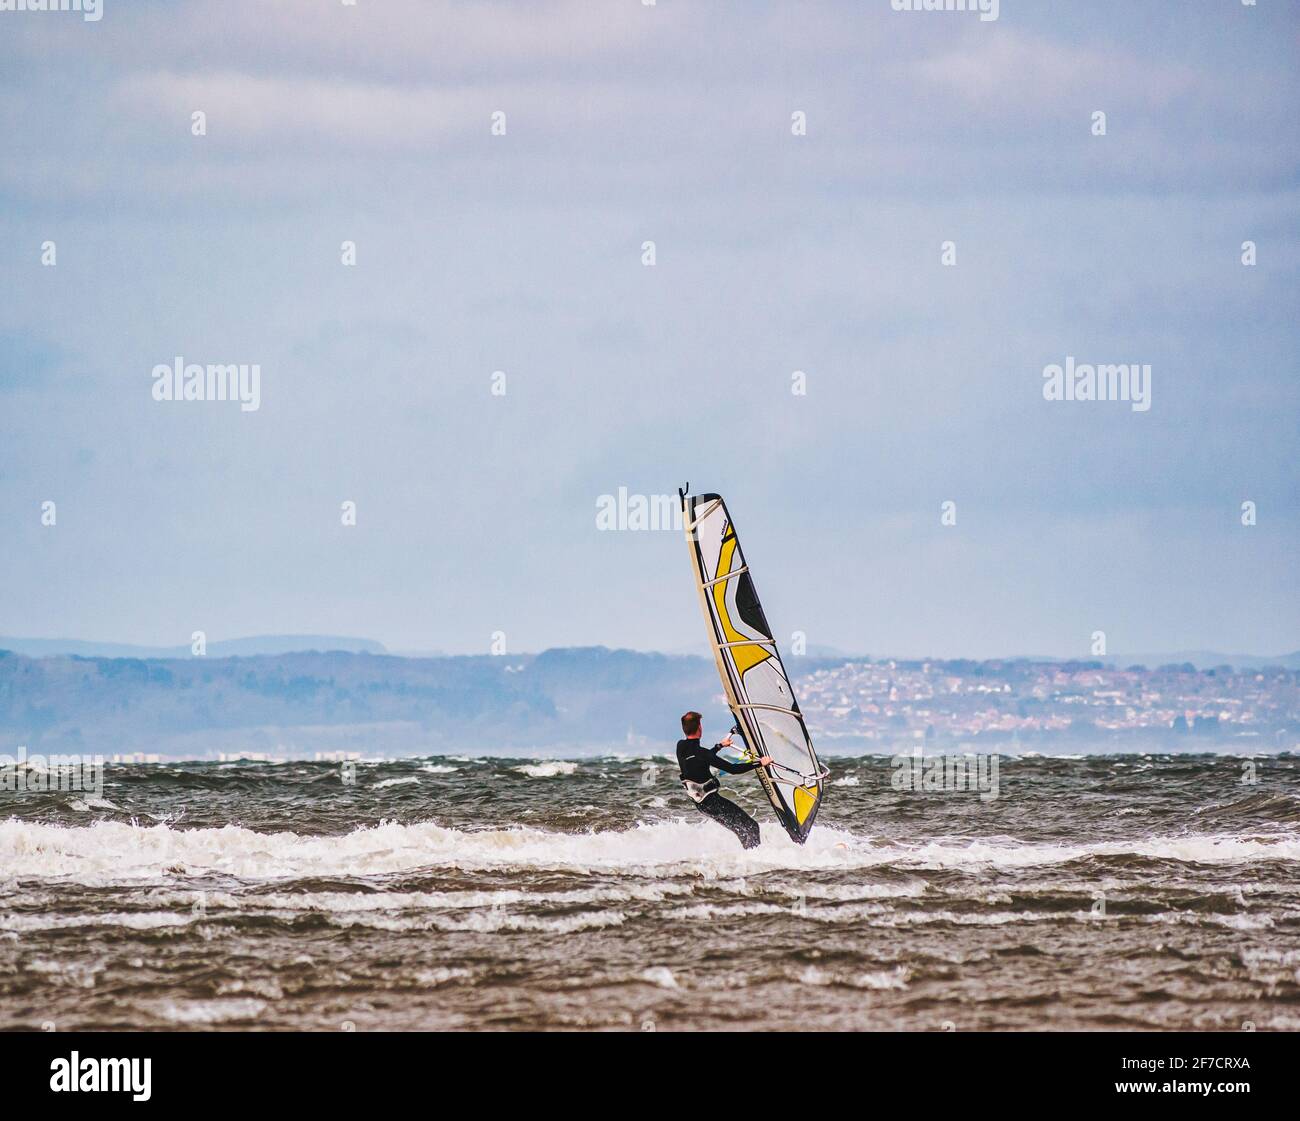 Uomo windsurf a Longniddry Bents in giornata ventosa in mare agitato, Firth of Forth, Scozia, Regno Unito Foto Stock